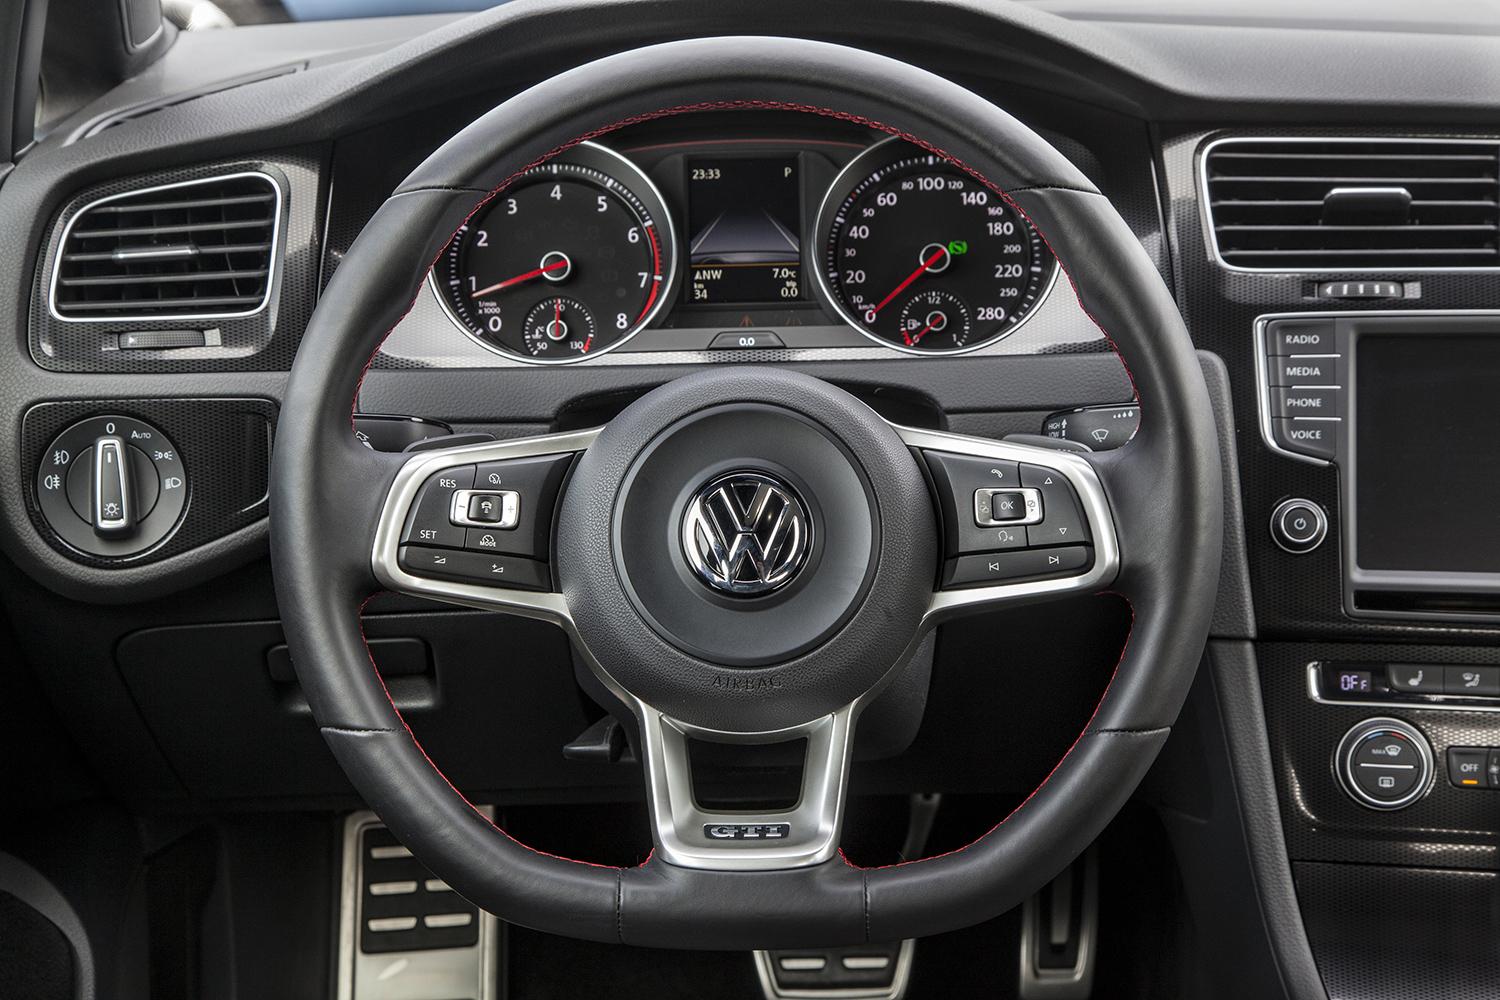 Speciaal Manoeuvreren Huidige First Drive: 2015 Volkswagen Golf GTI | Digital Trends